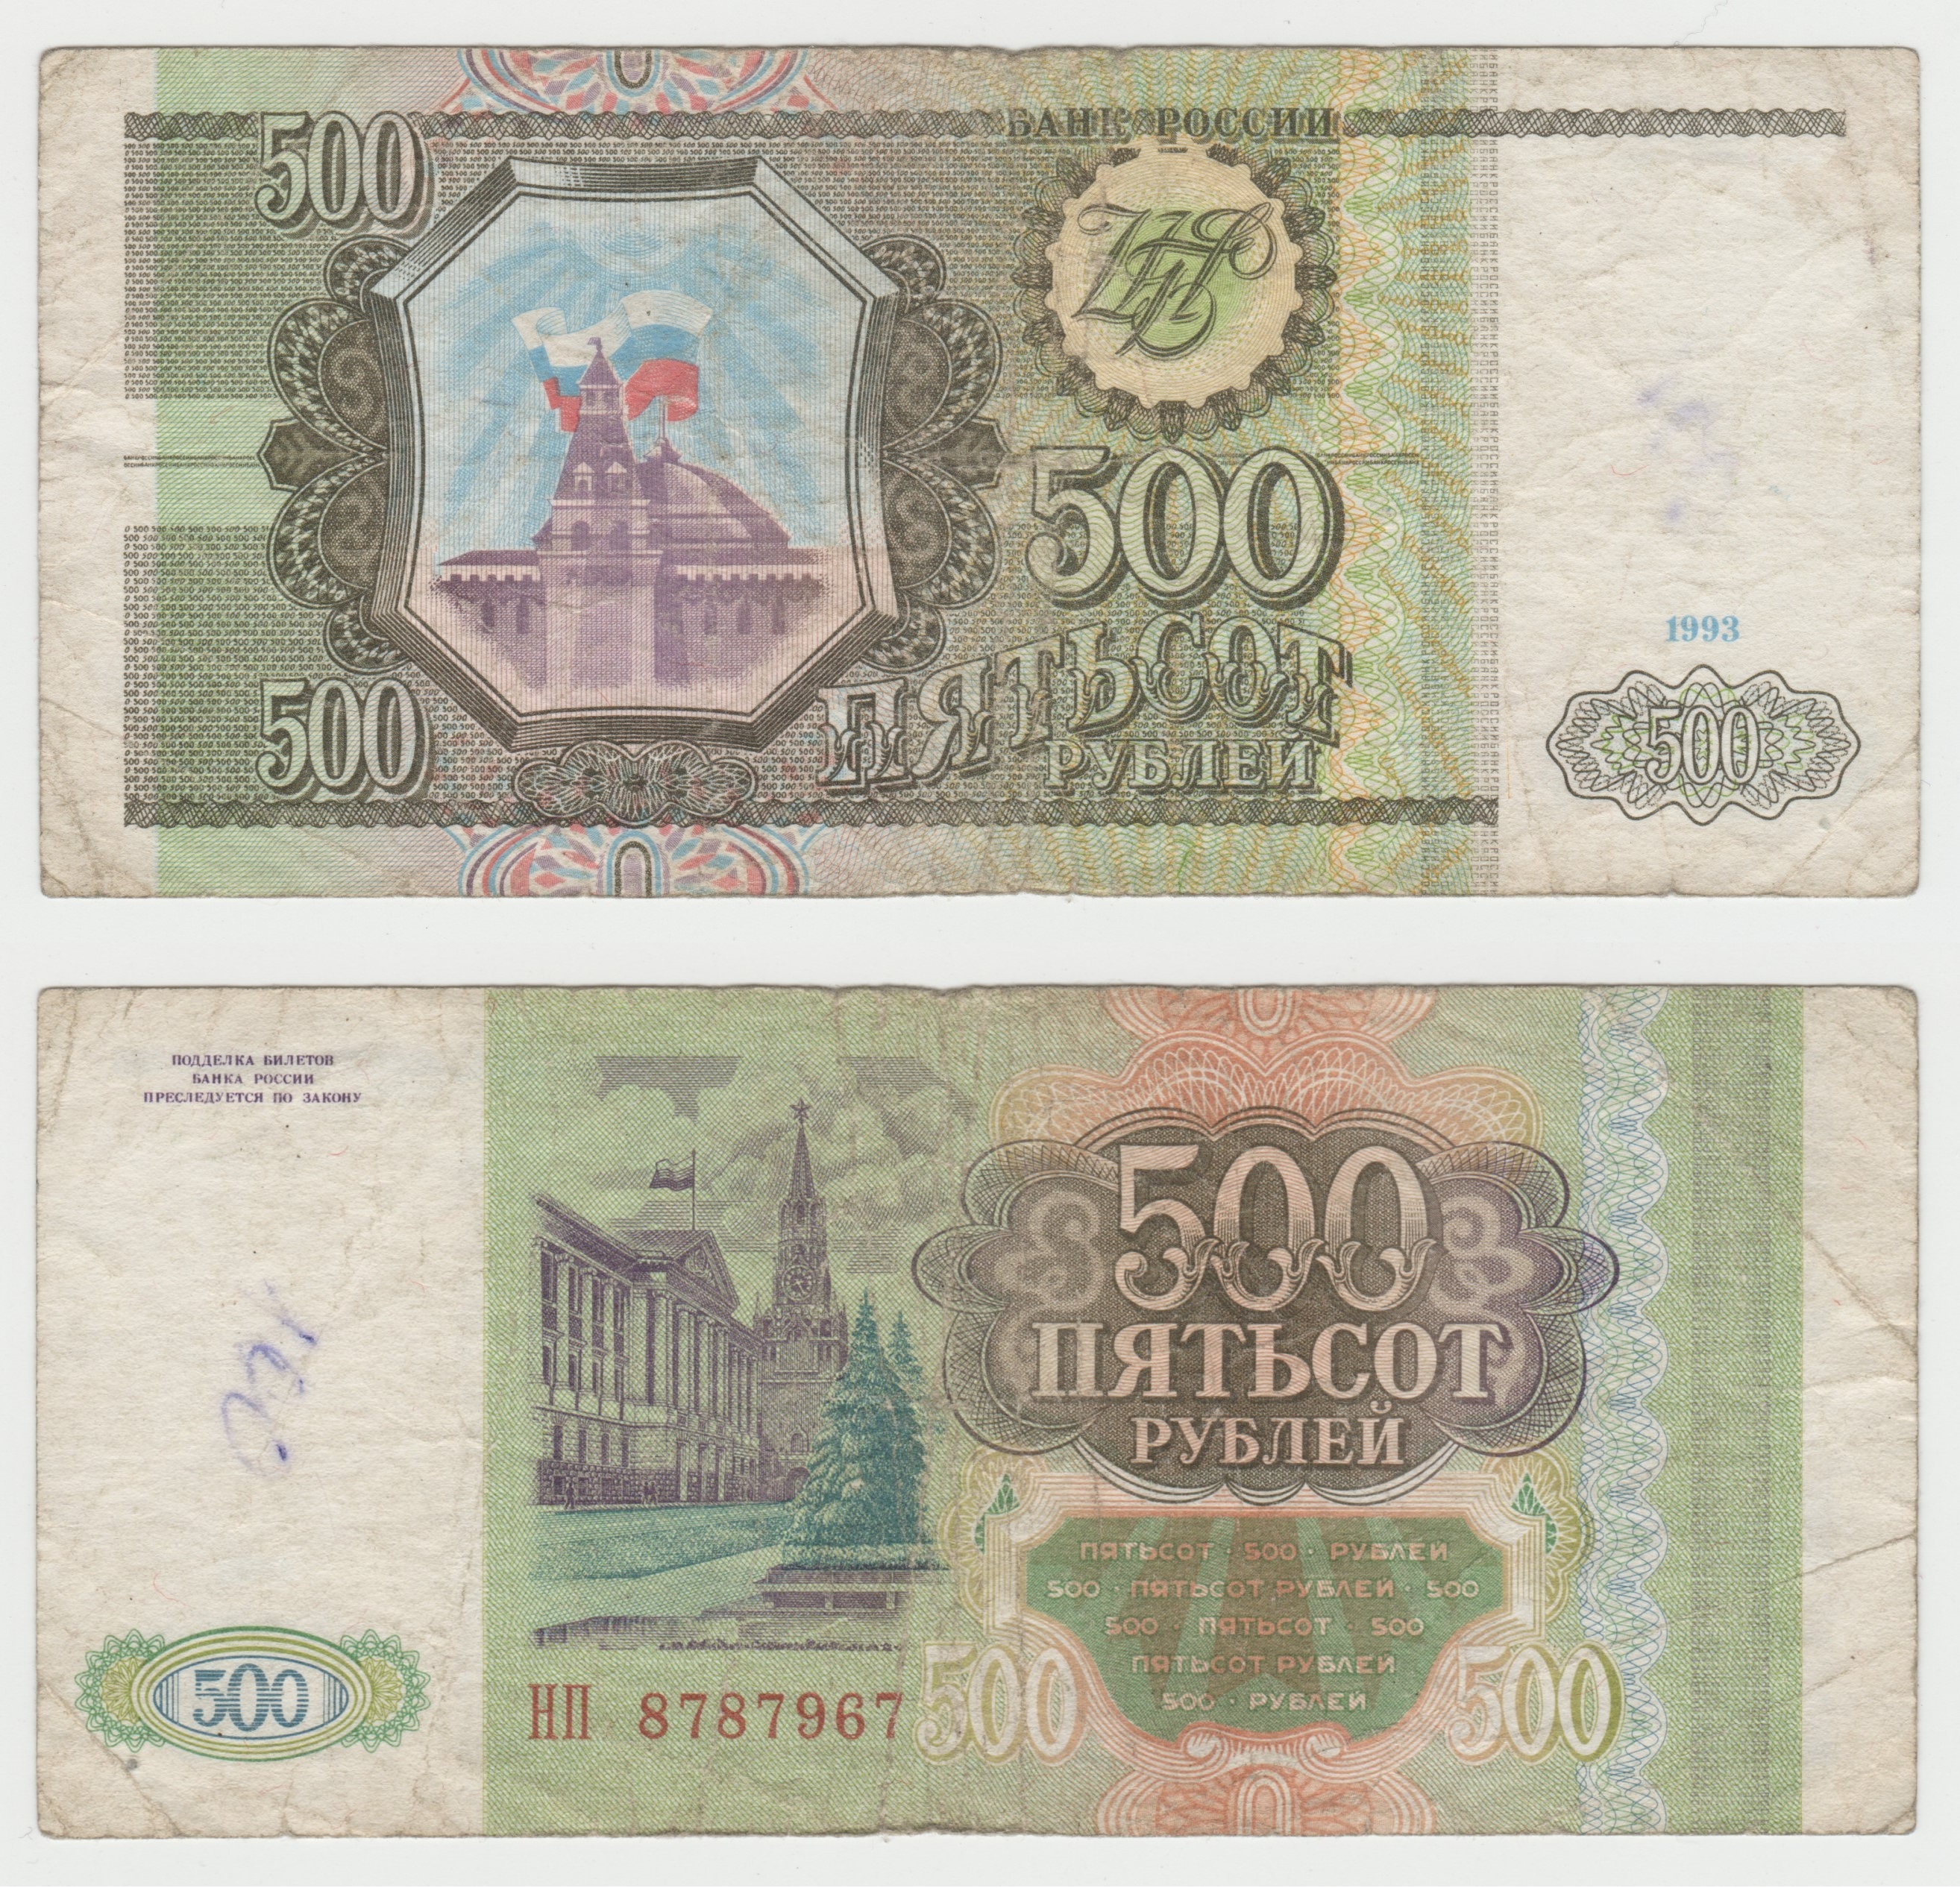 Купюры 90 годов. 500 Рублей купюра 1993г. Банкноты 1993 года. Банкноты России 1993. 500 Рублей.